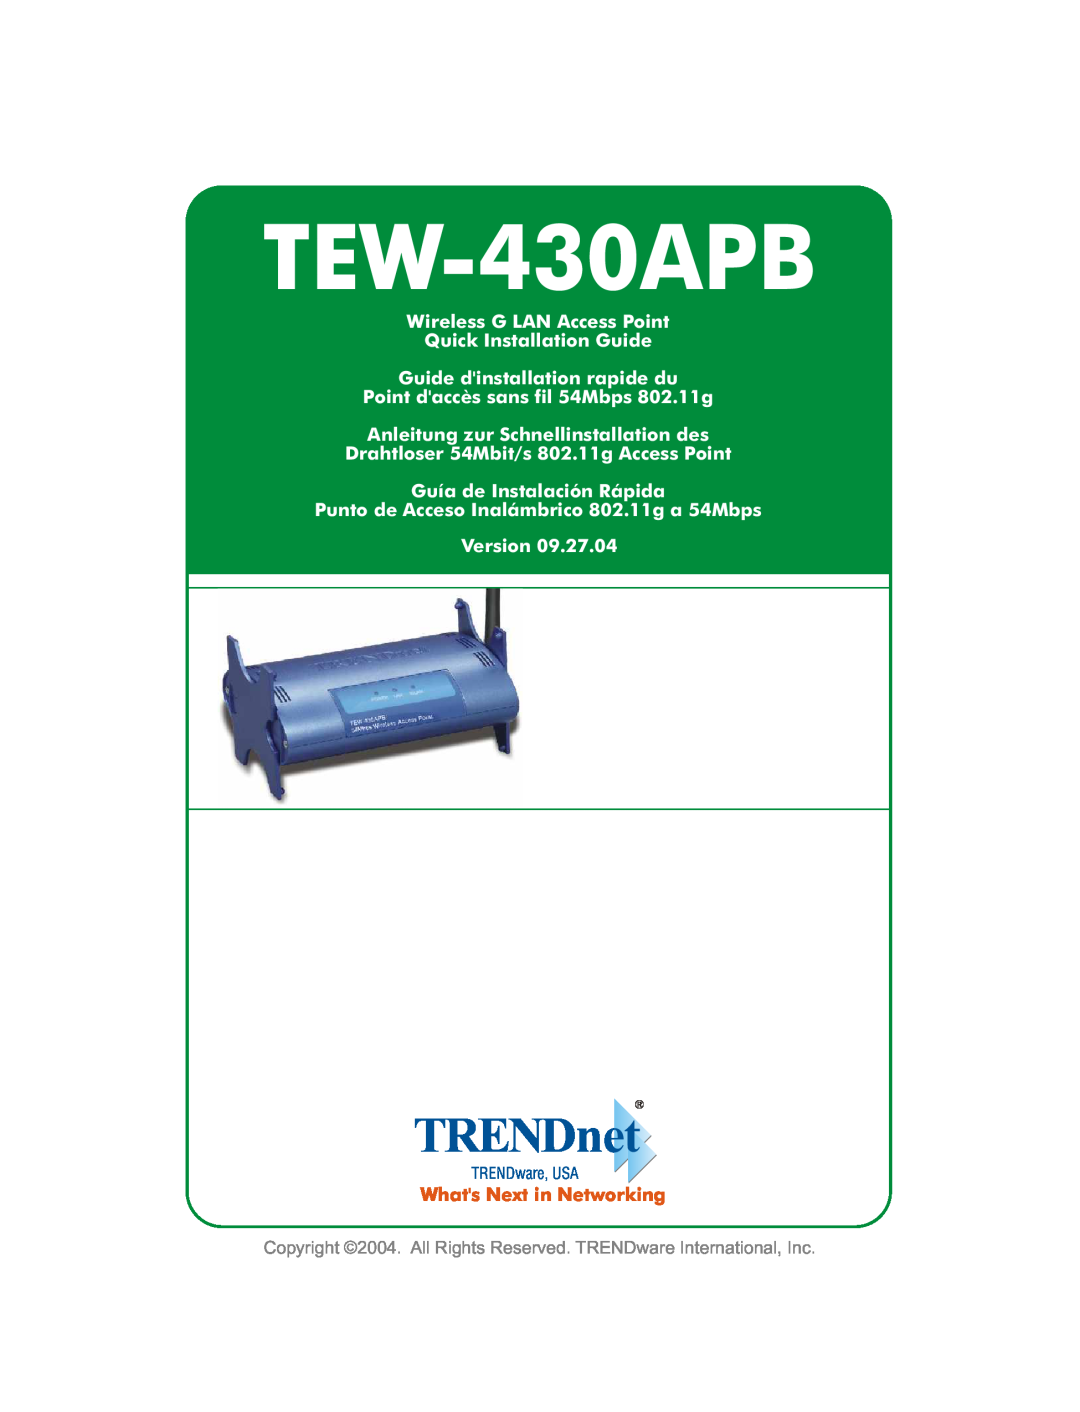 TRENDnet TEW-430APB manual 